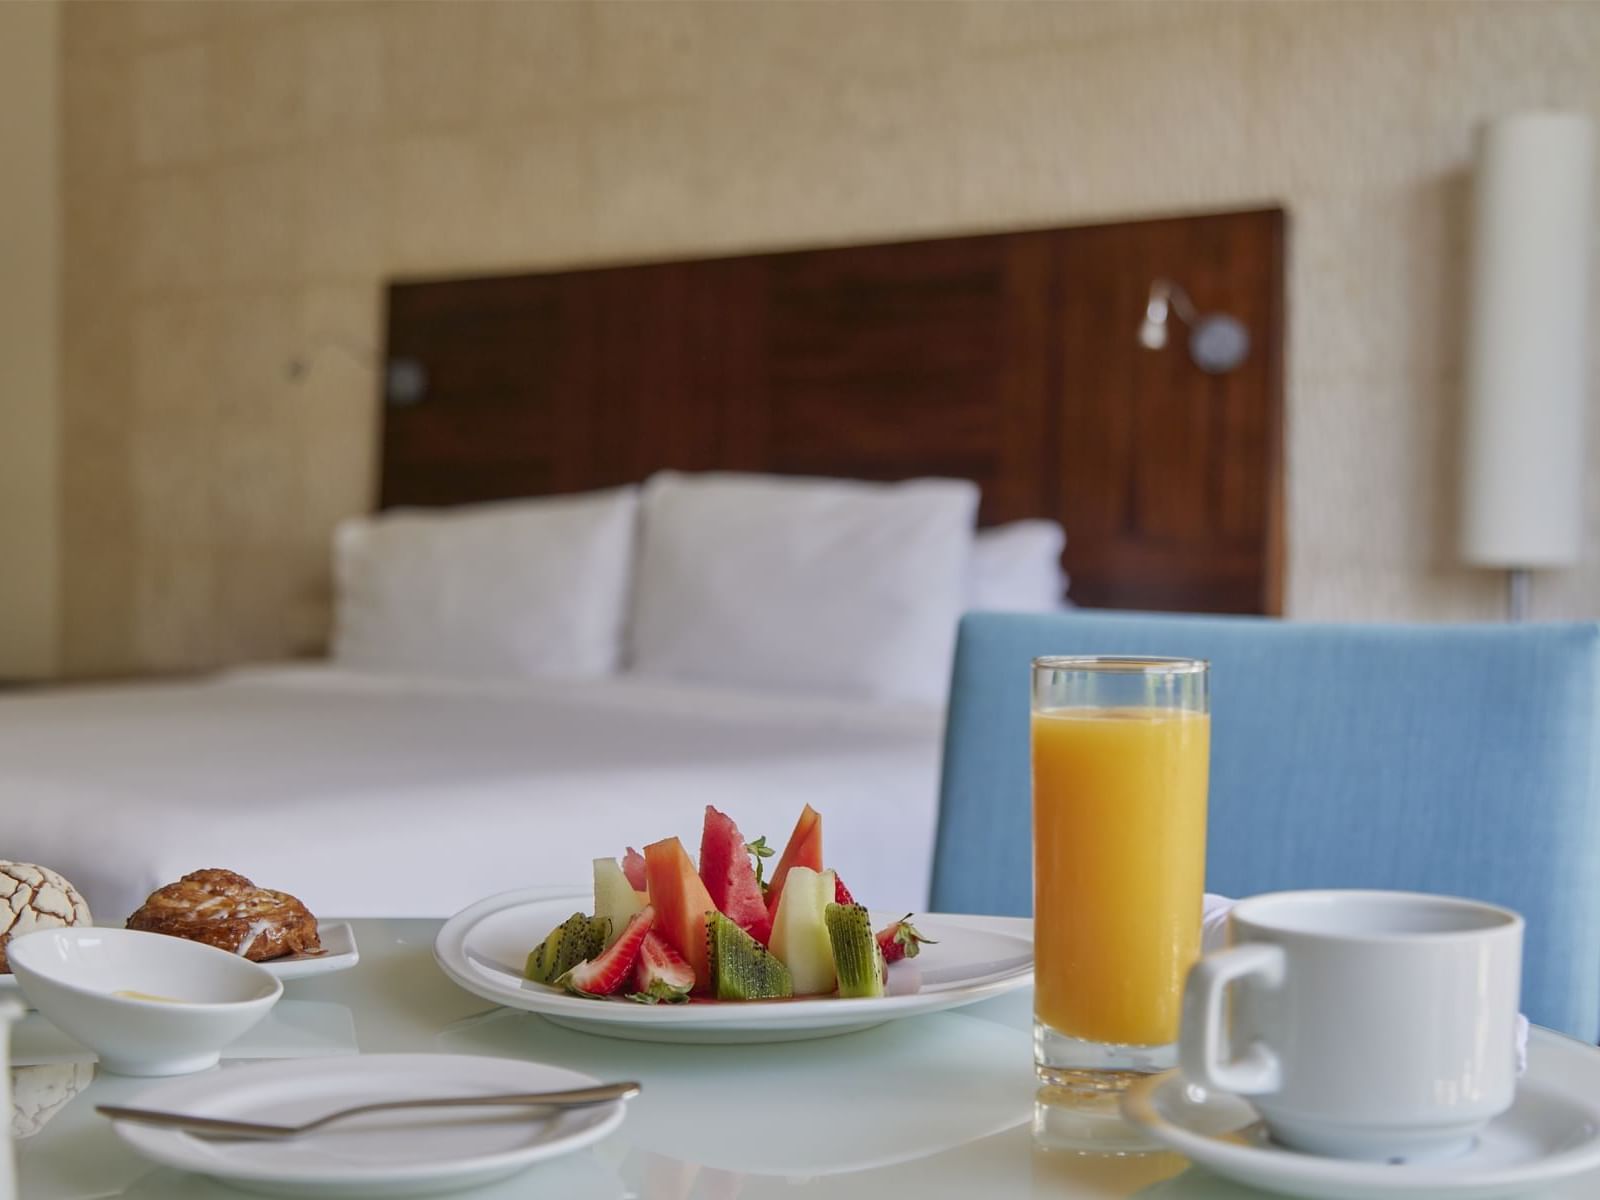 Breakfast meal served in Honeymoon Suite at La Colección Resort